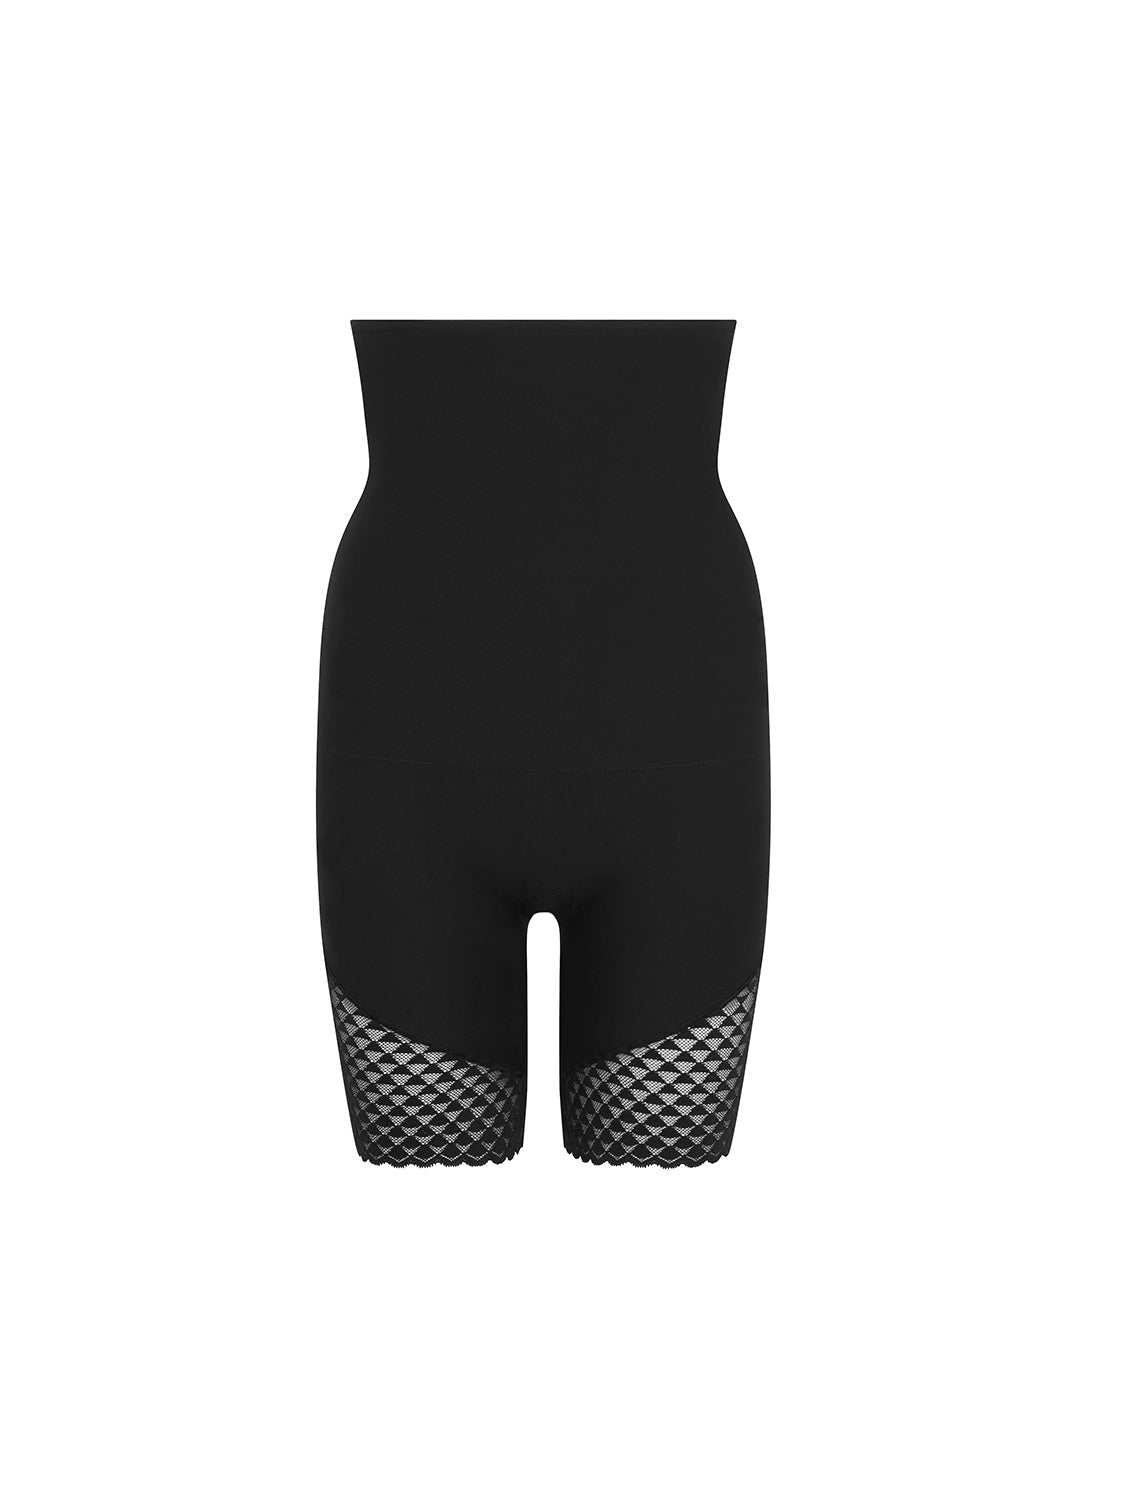 Black French Lace Sheath Bodysuit - Subtile - Simone Pérèle – Simone Pérèle  UK